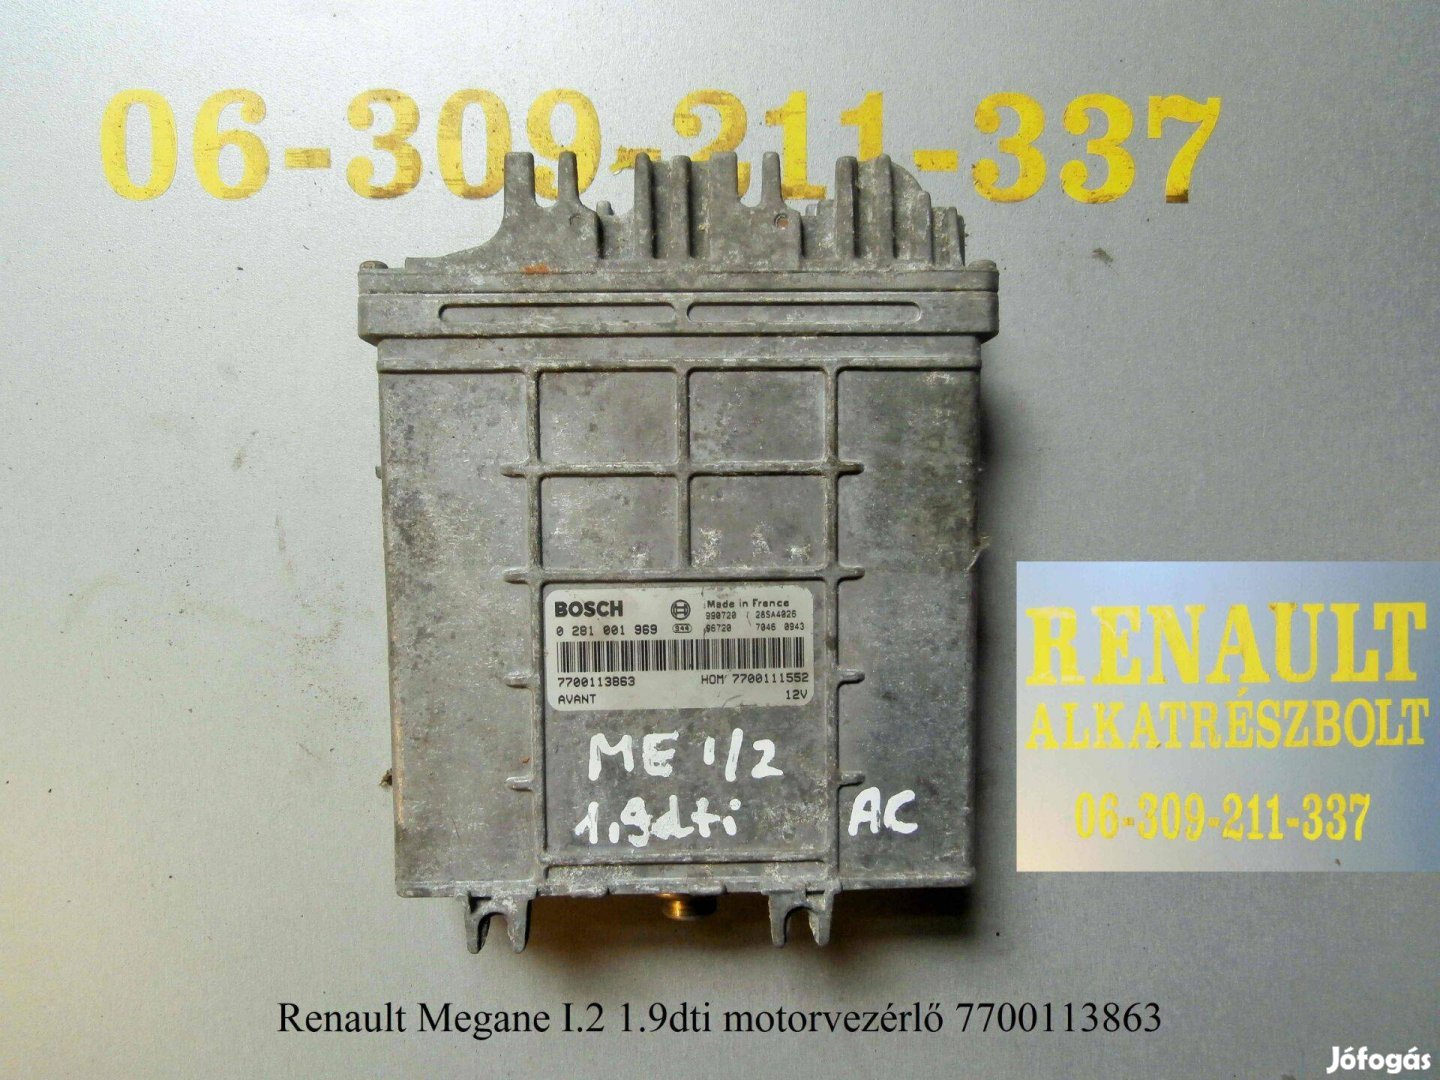 Renault Megane I/2 1.9dti motorvezérlő 7700113863